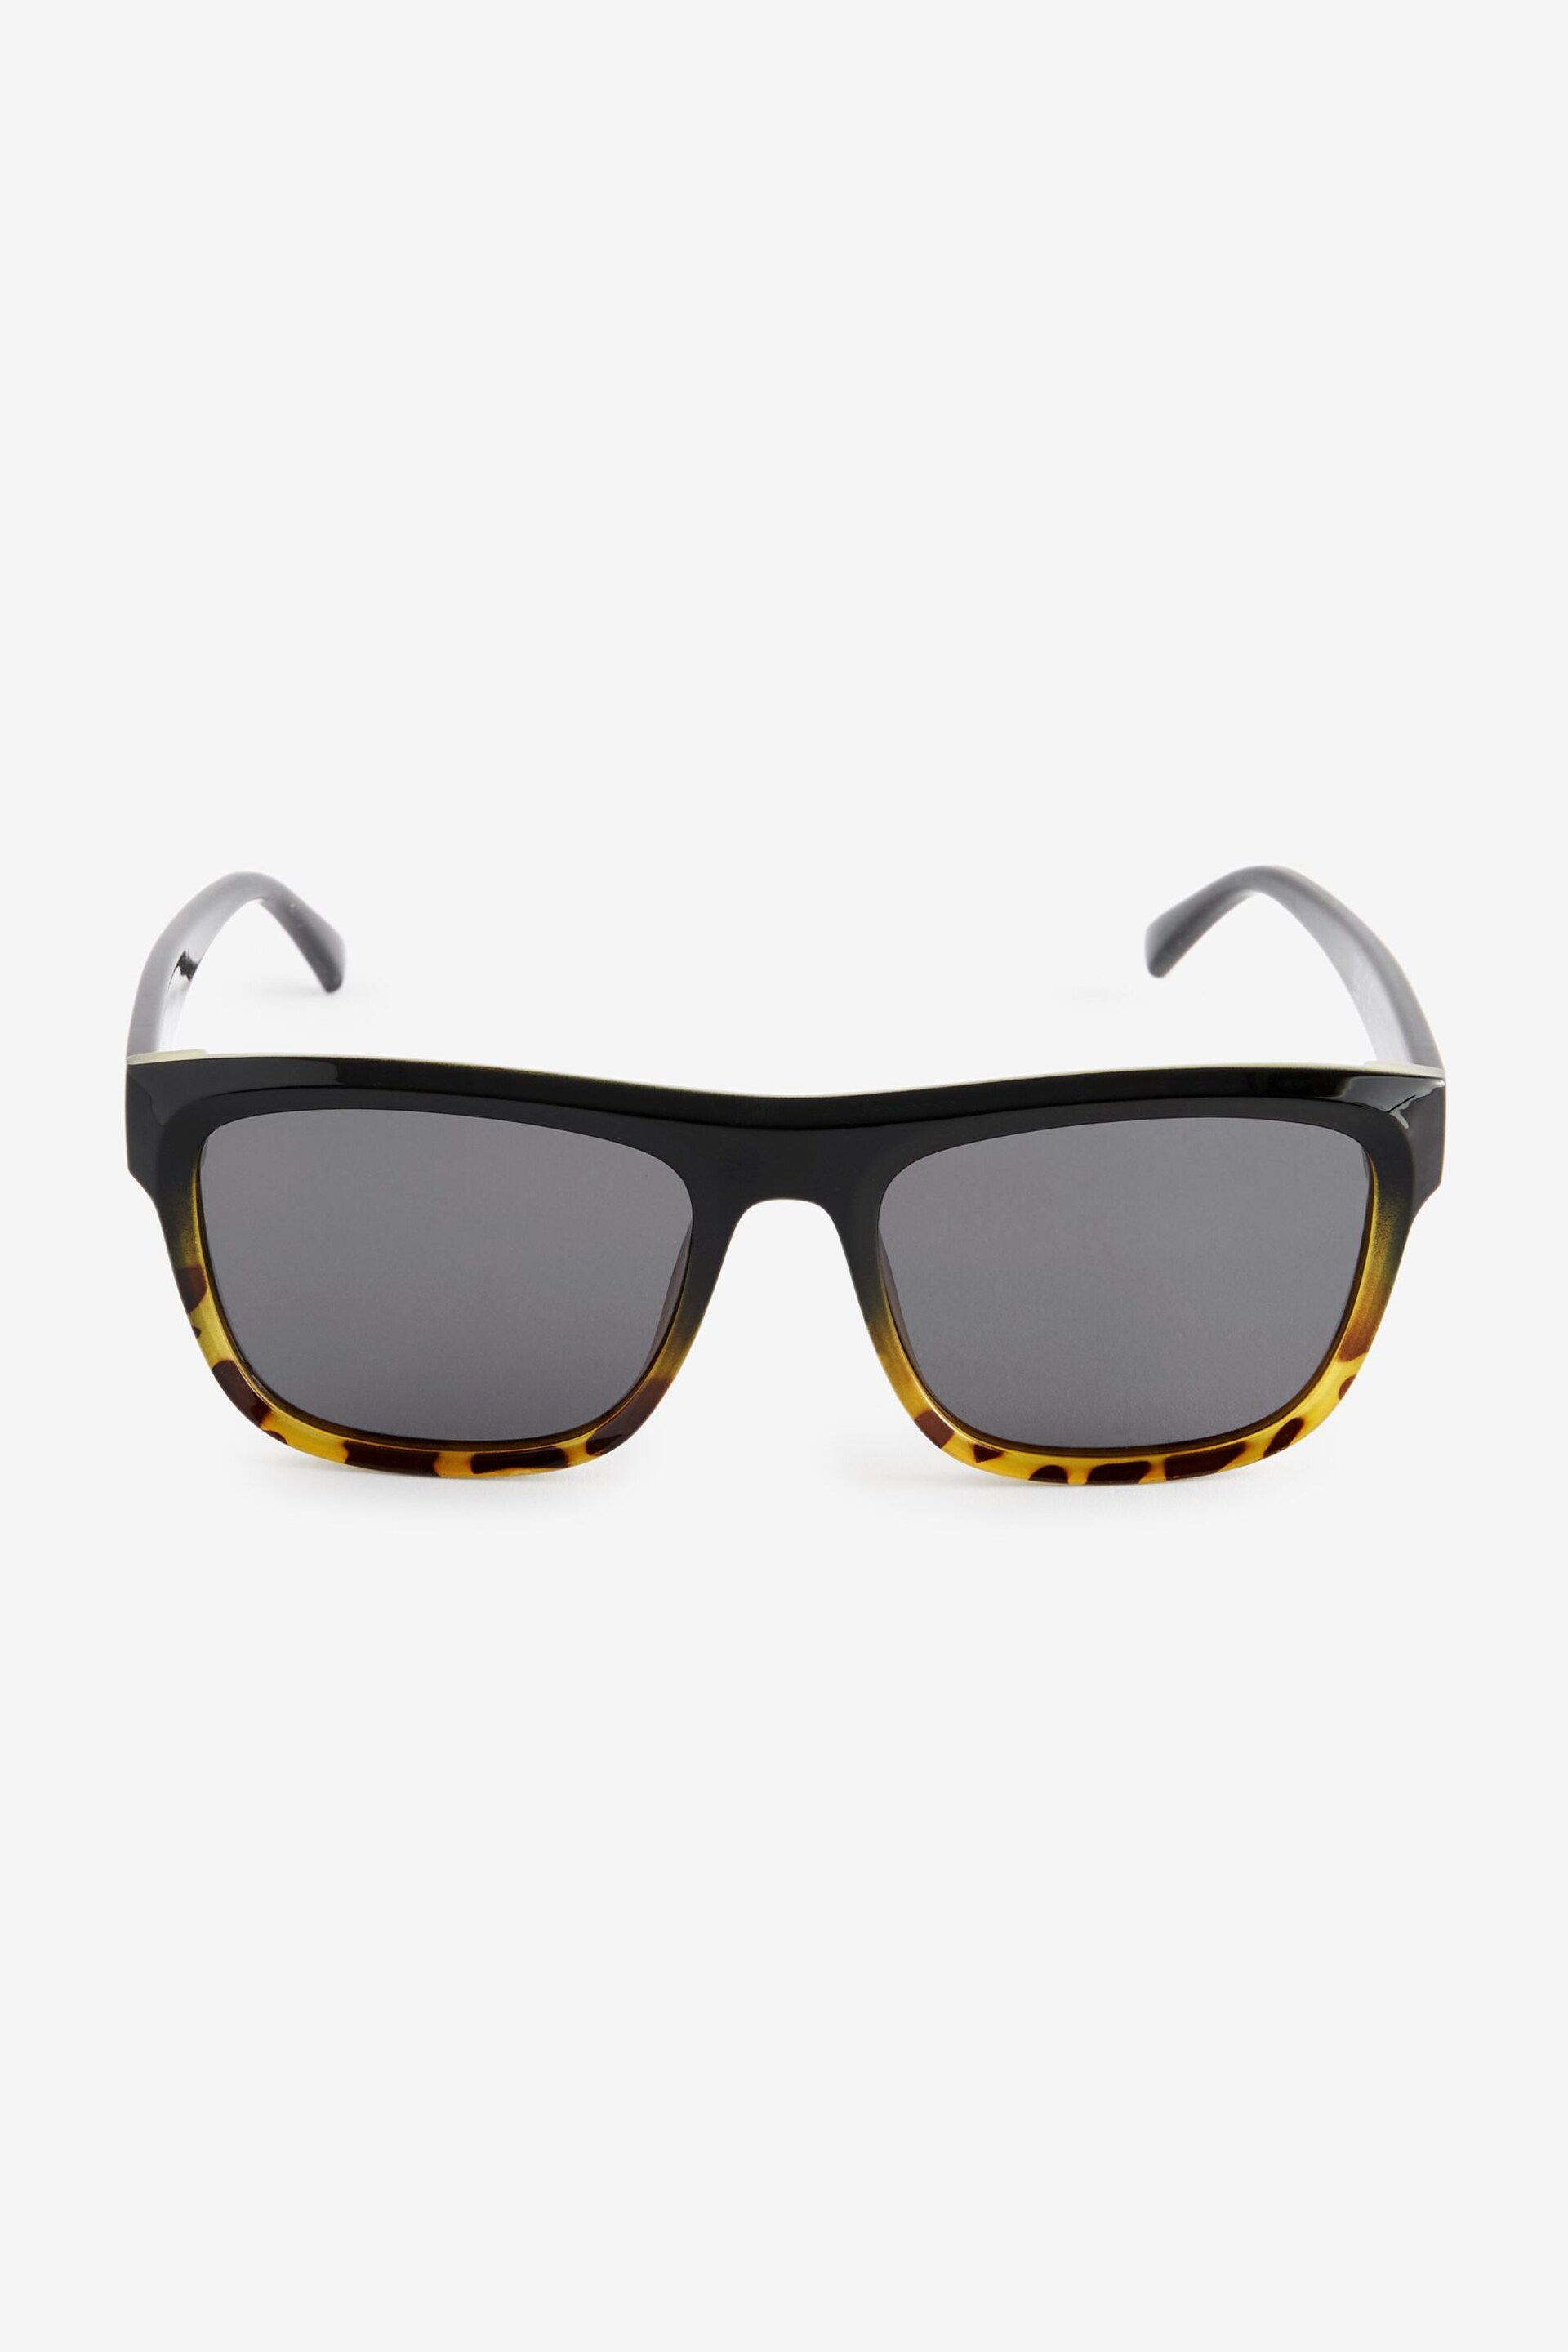 Tortoiseshell Brown Flatbrow Polarised Sunglasses - Image 4 of 6